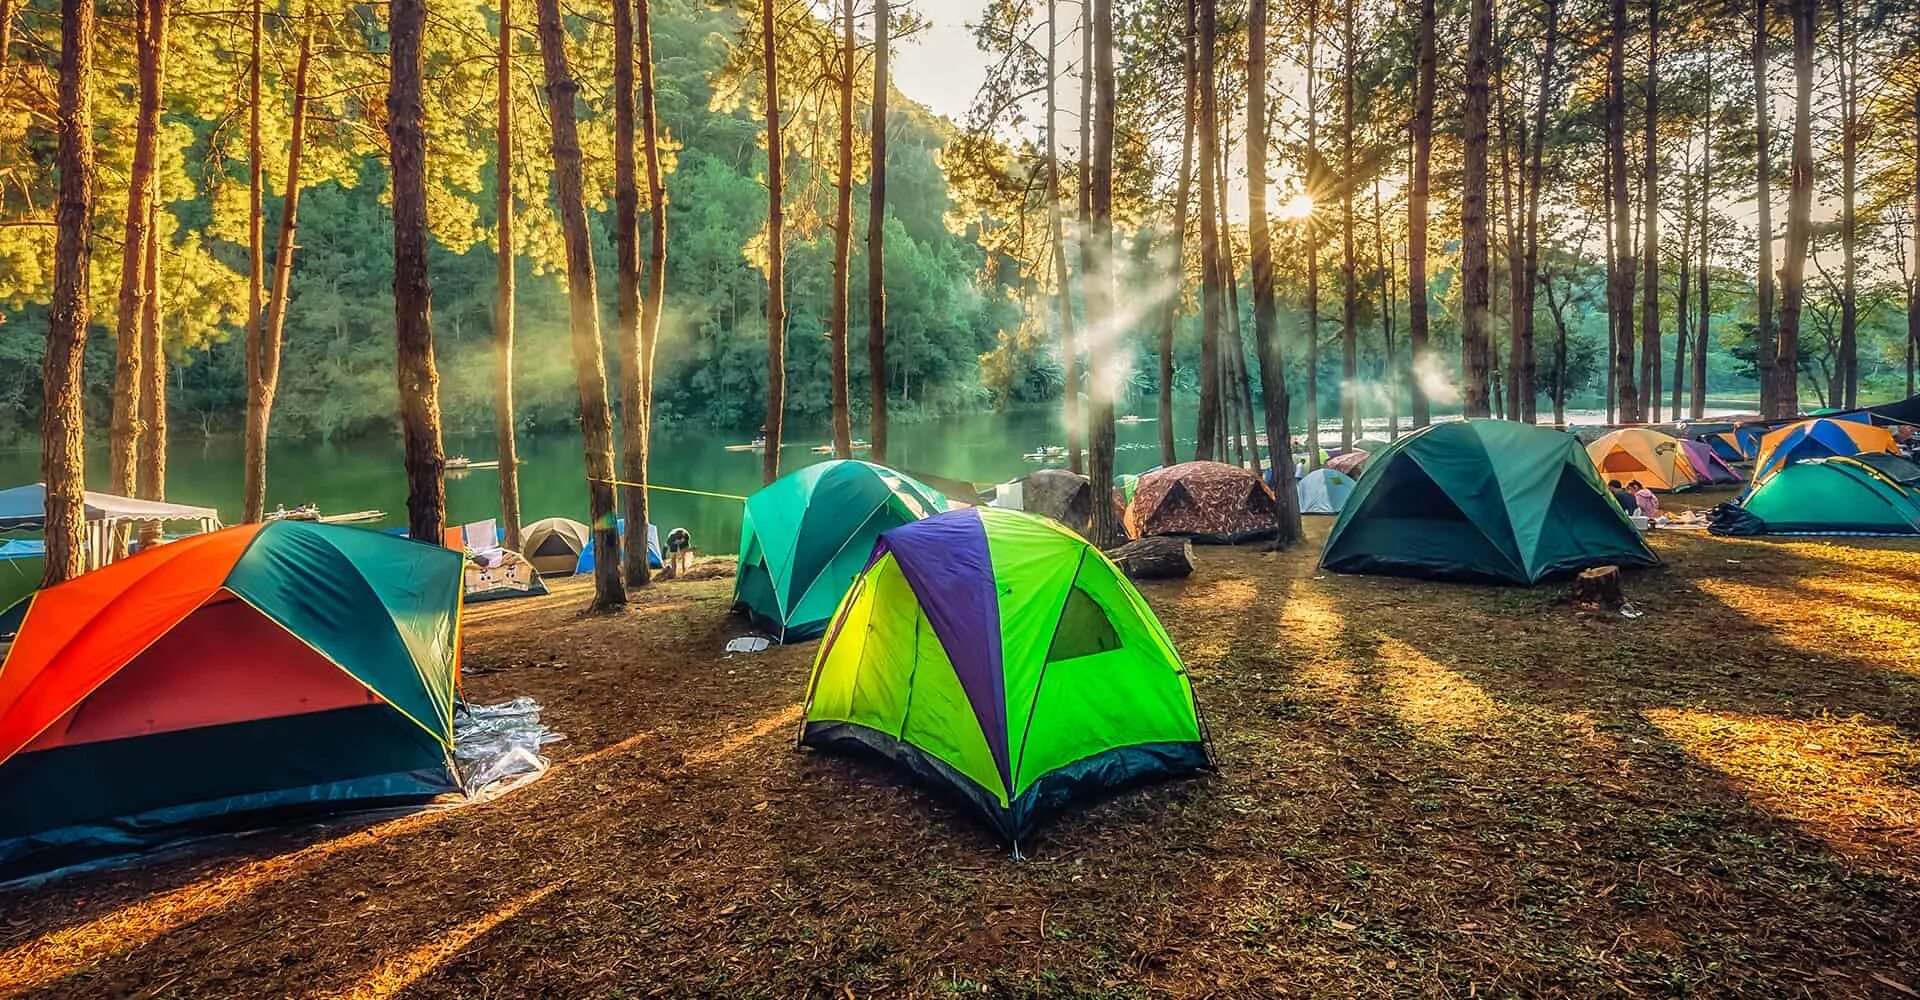 Палатка в лесу. Палатки для кемпинга. Палаточный лагерь. Палаточный лагерь в лесу. Stay in a camp